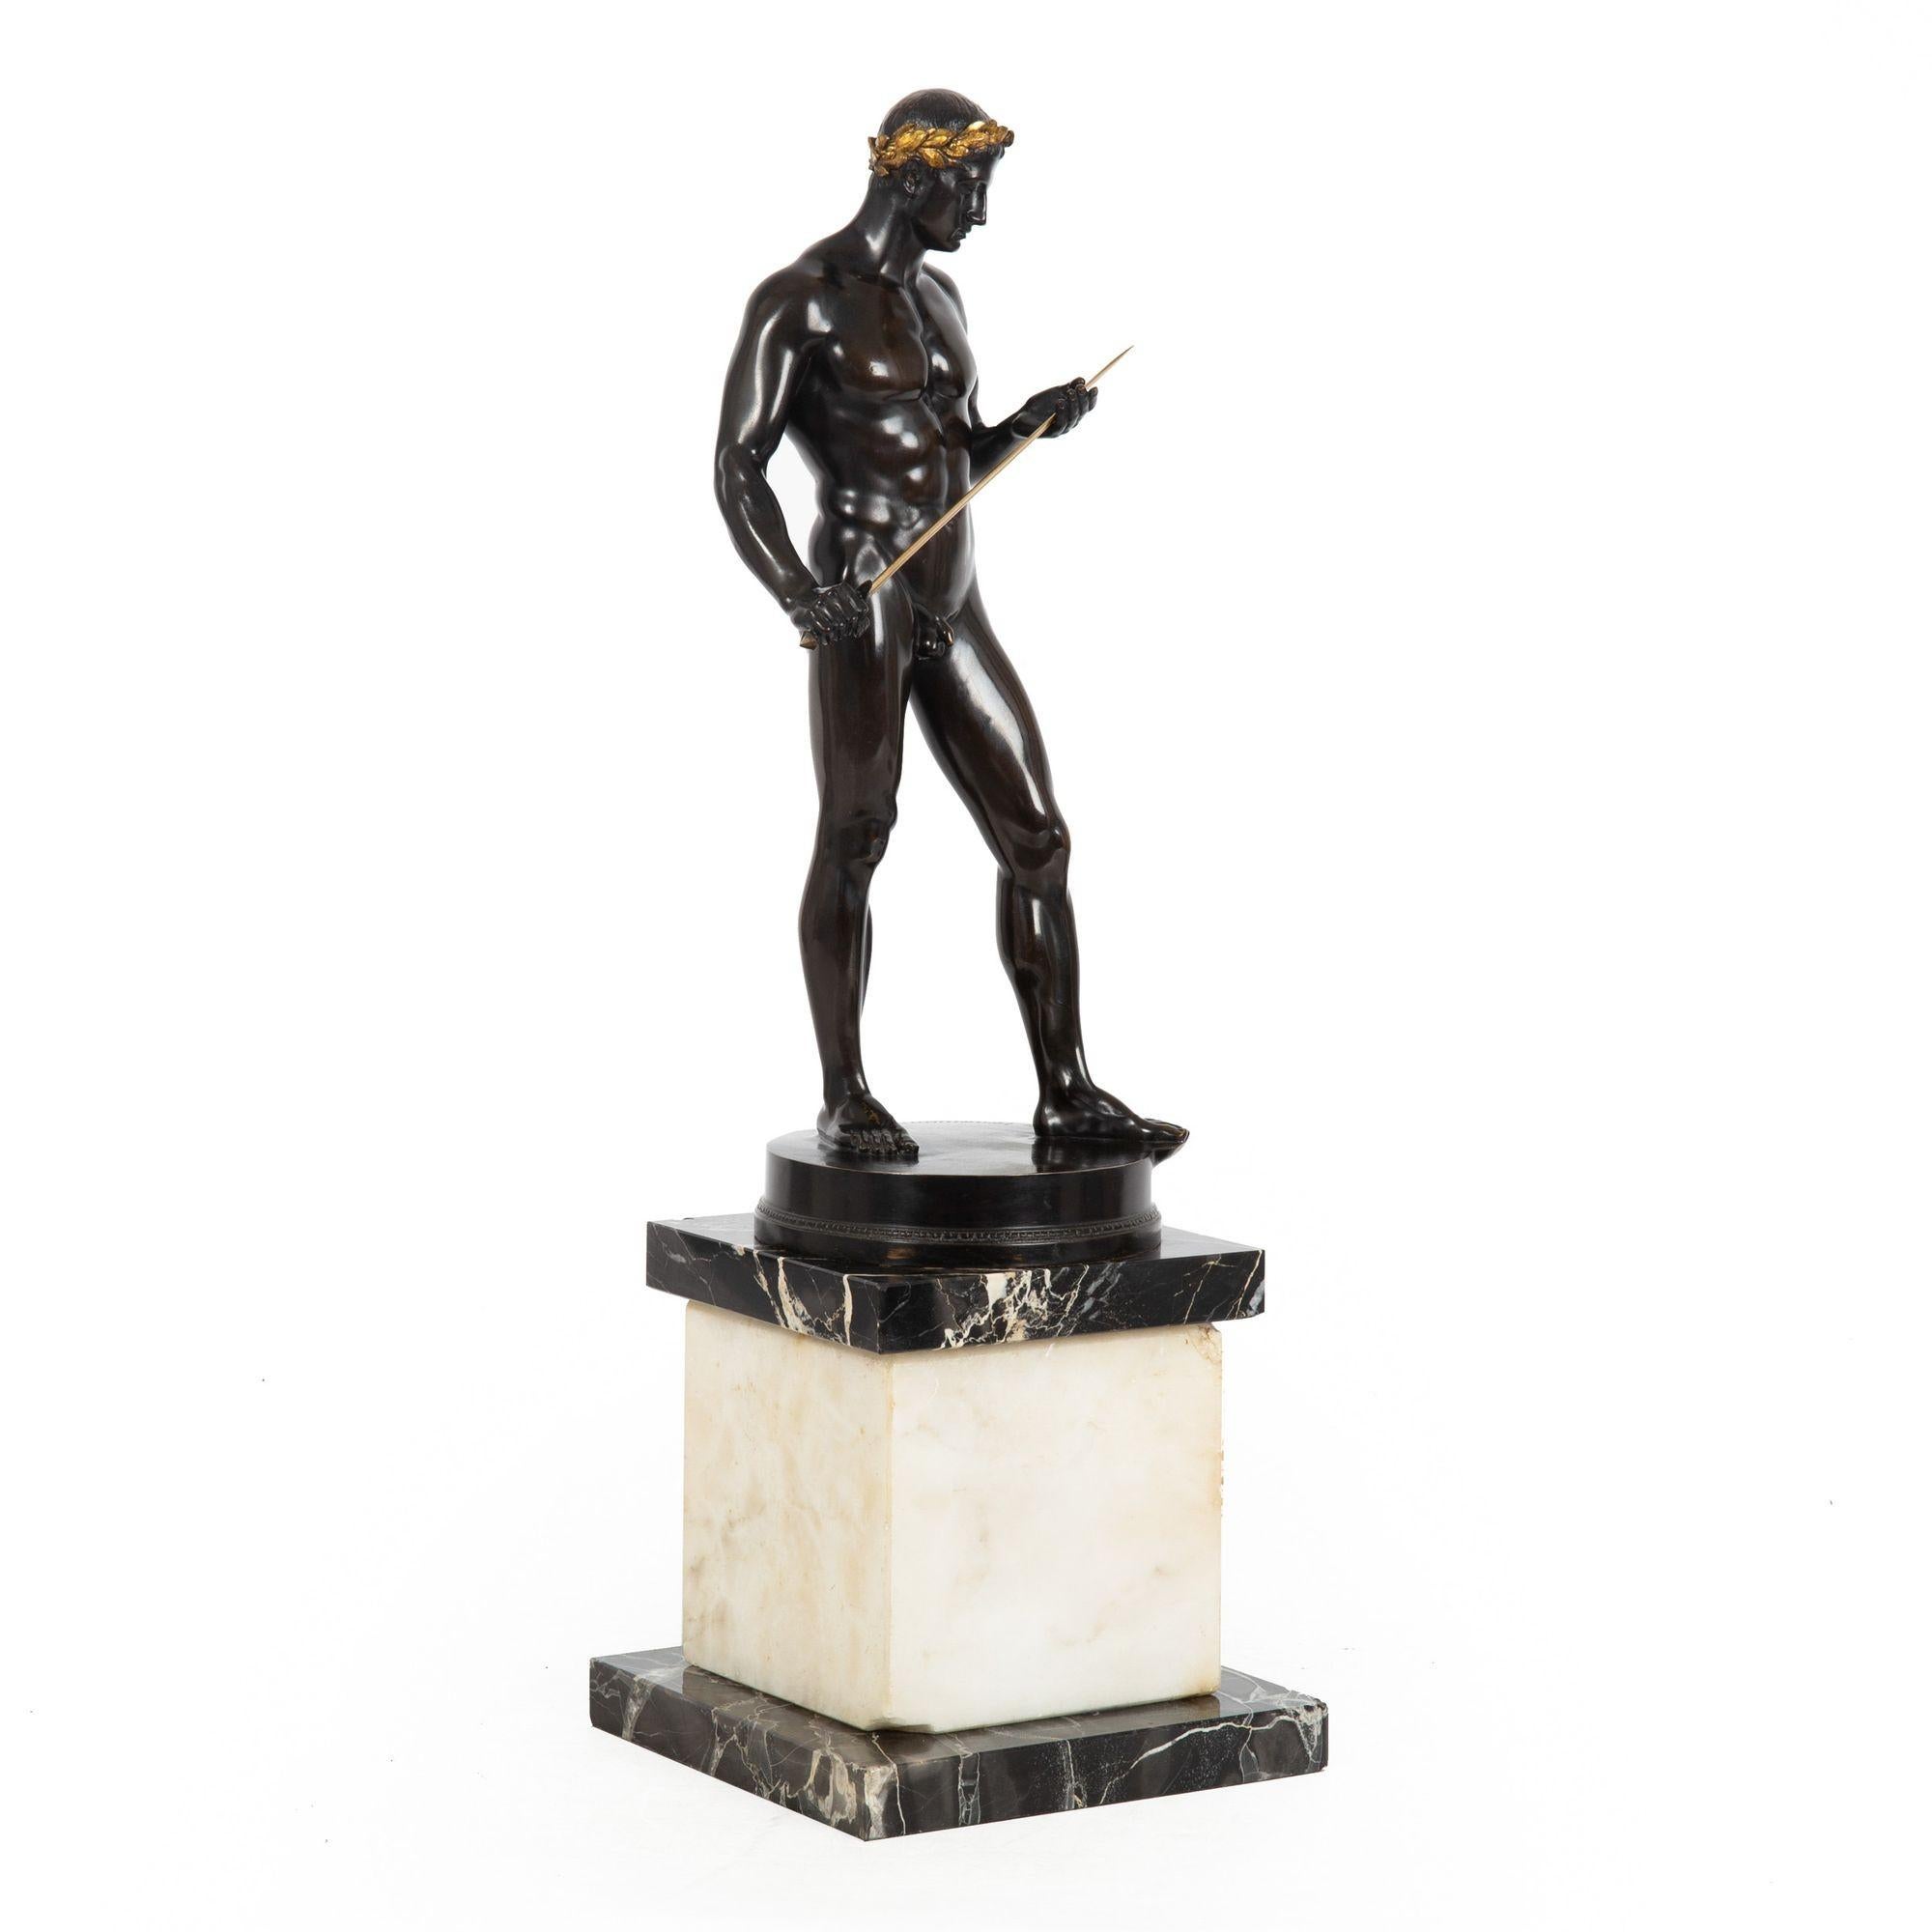 Art Deco German Antique Bronze Sculpture “Fencer” by Fritz Heinemann